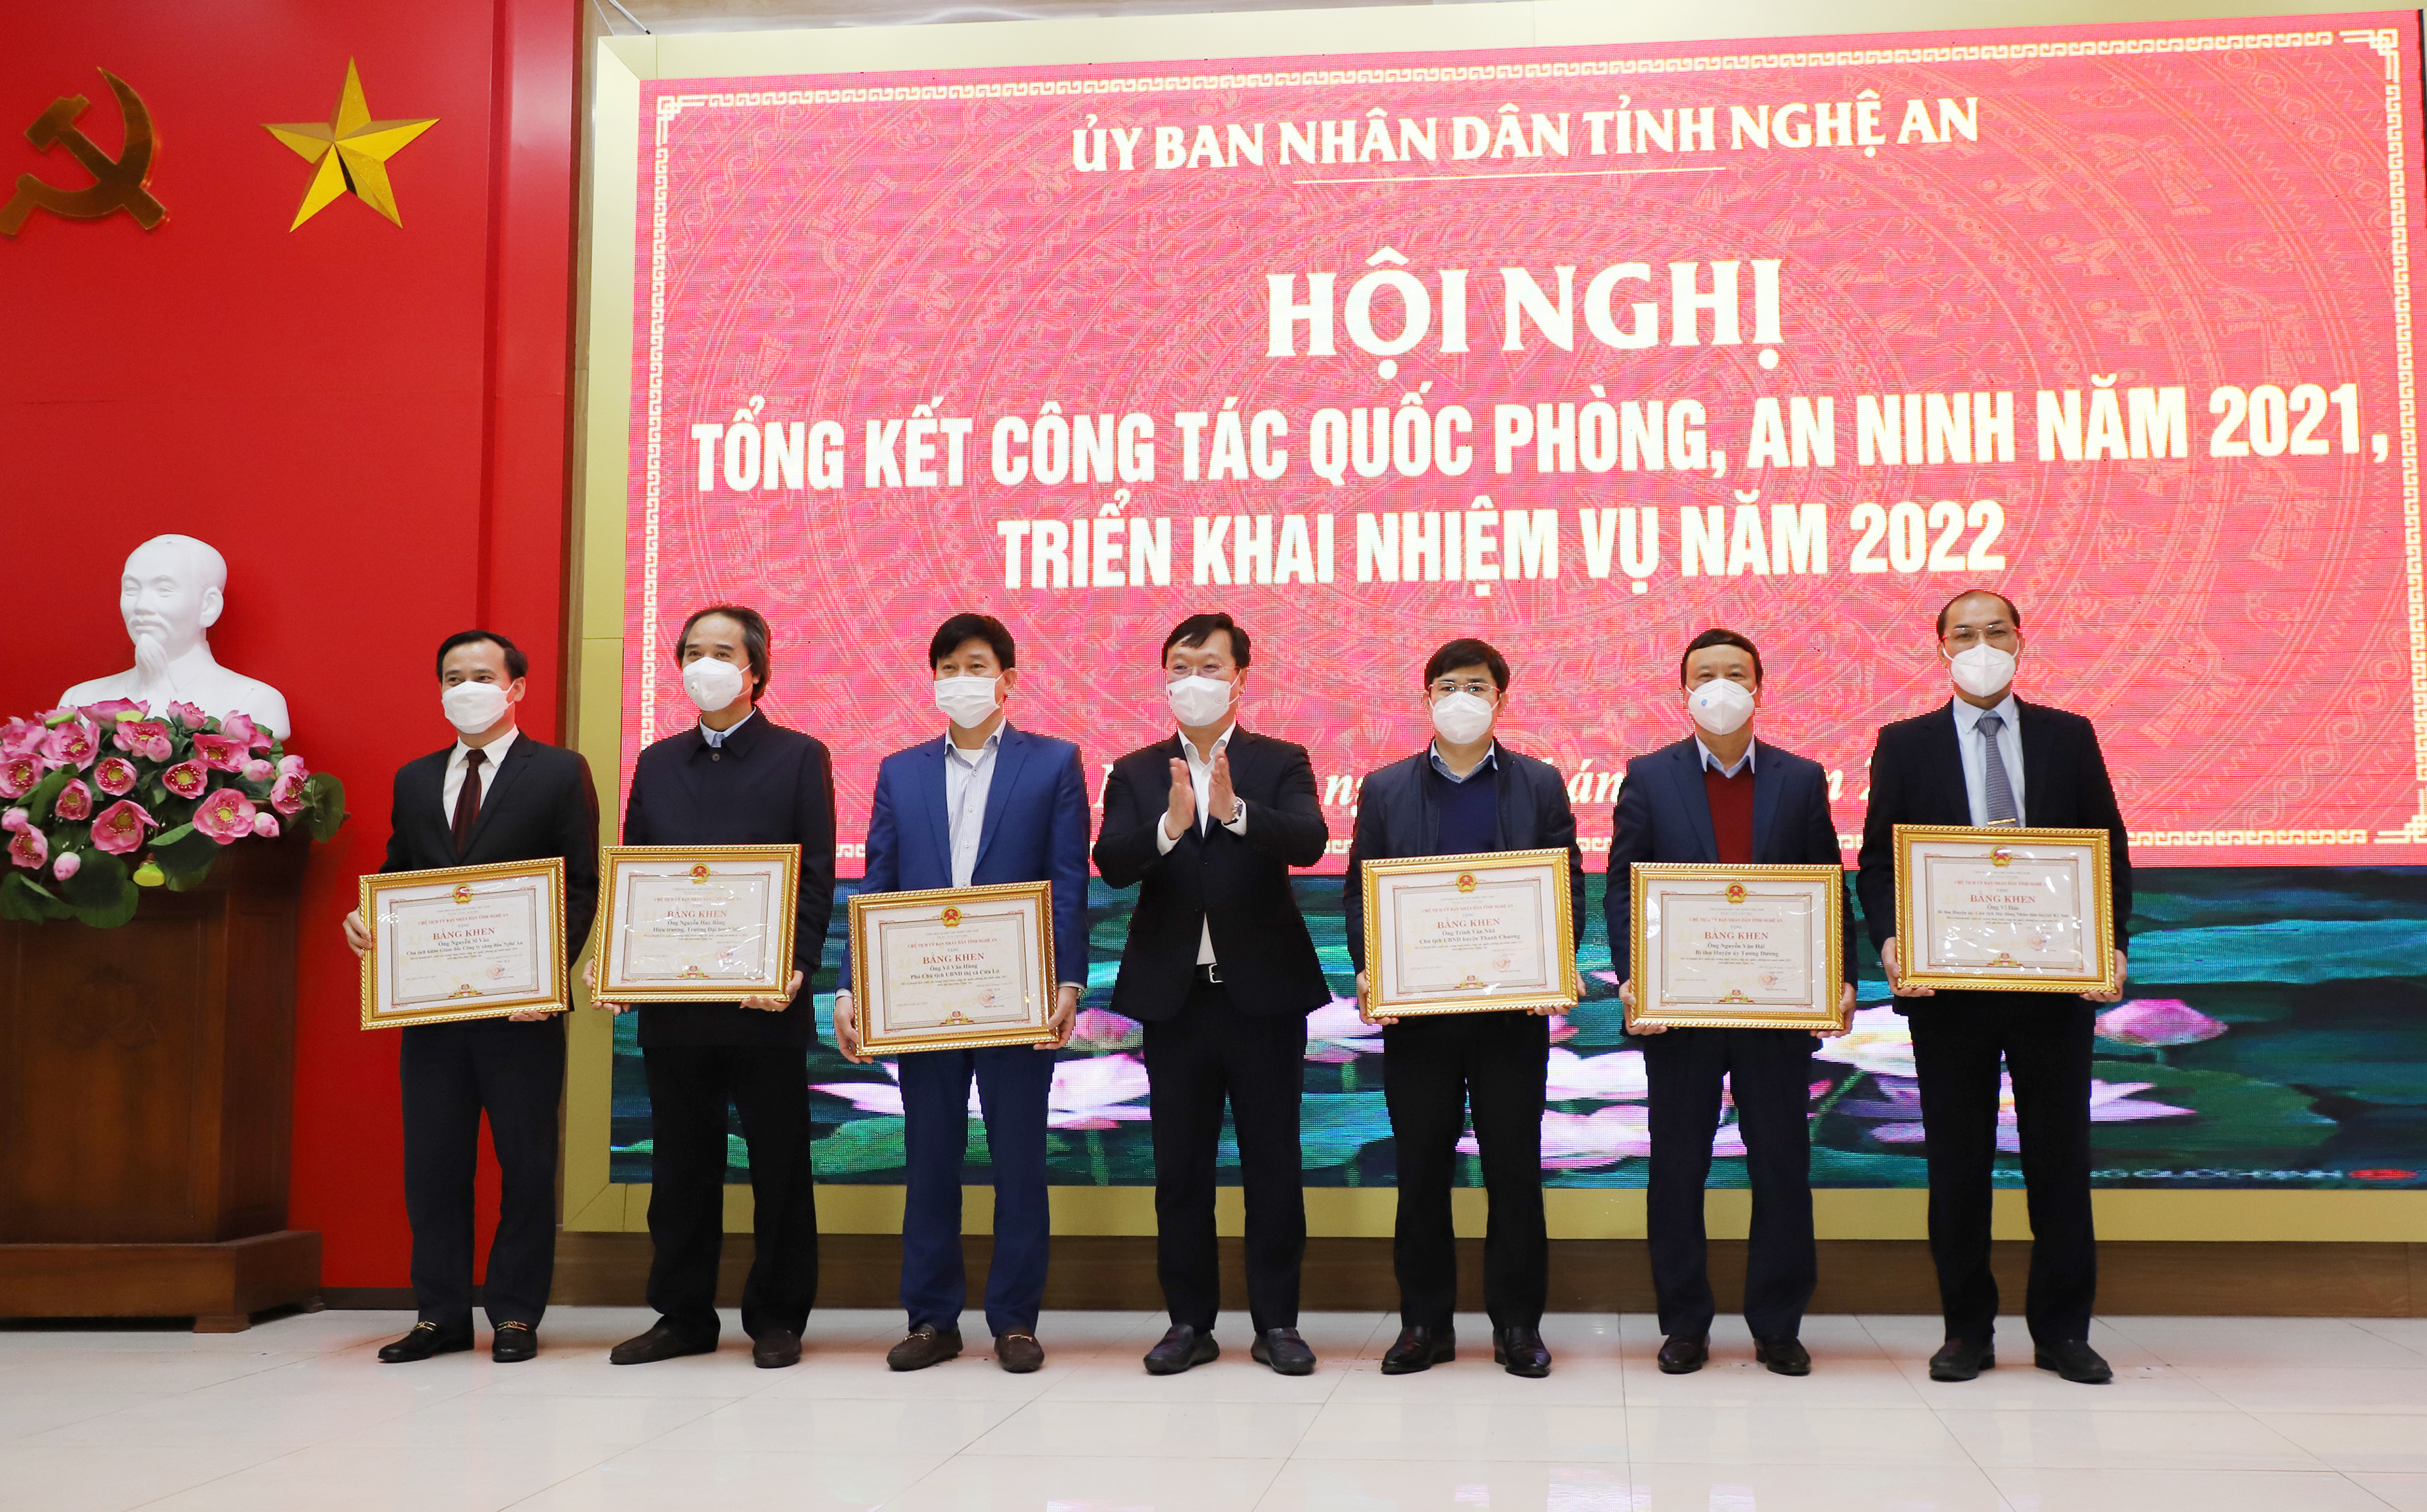 Đồng chí Nguyễn Đức Trung - Chủ tịch UBND tỉnh trao Bằng khen cho 8 cá nhân có thành tích xuất sắc trong công tác quốc phòng, an ninh năm 2021. Ảnh: Phạm Bằng